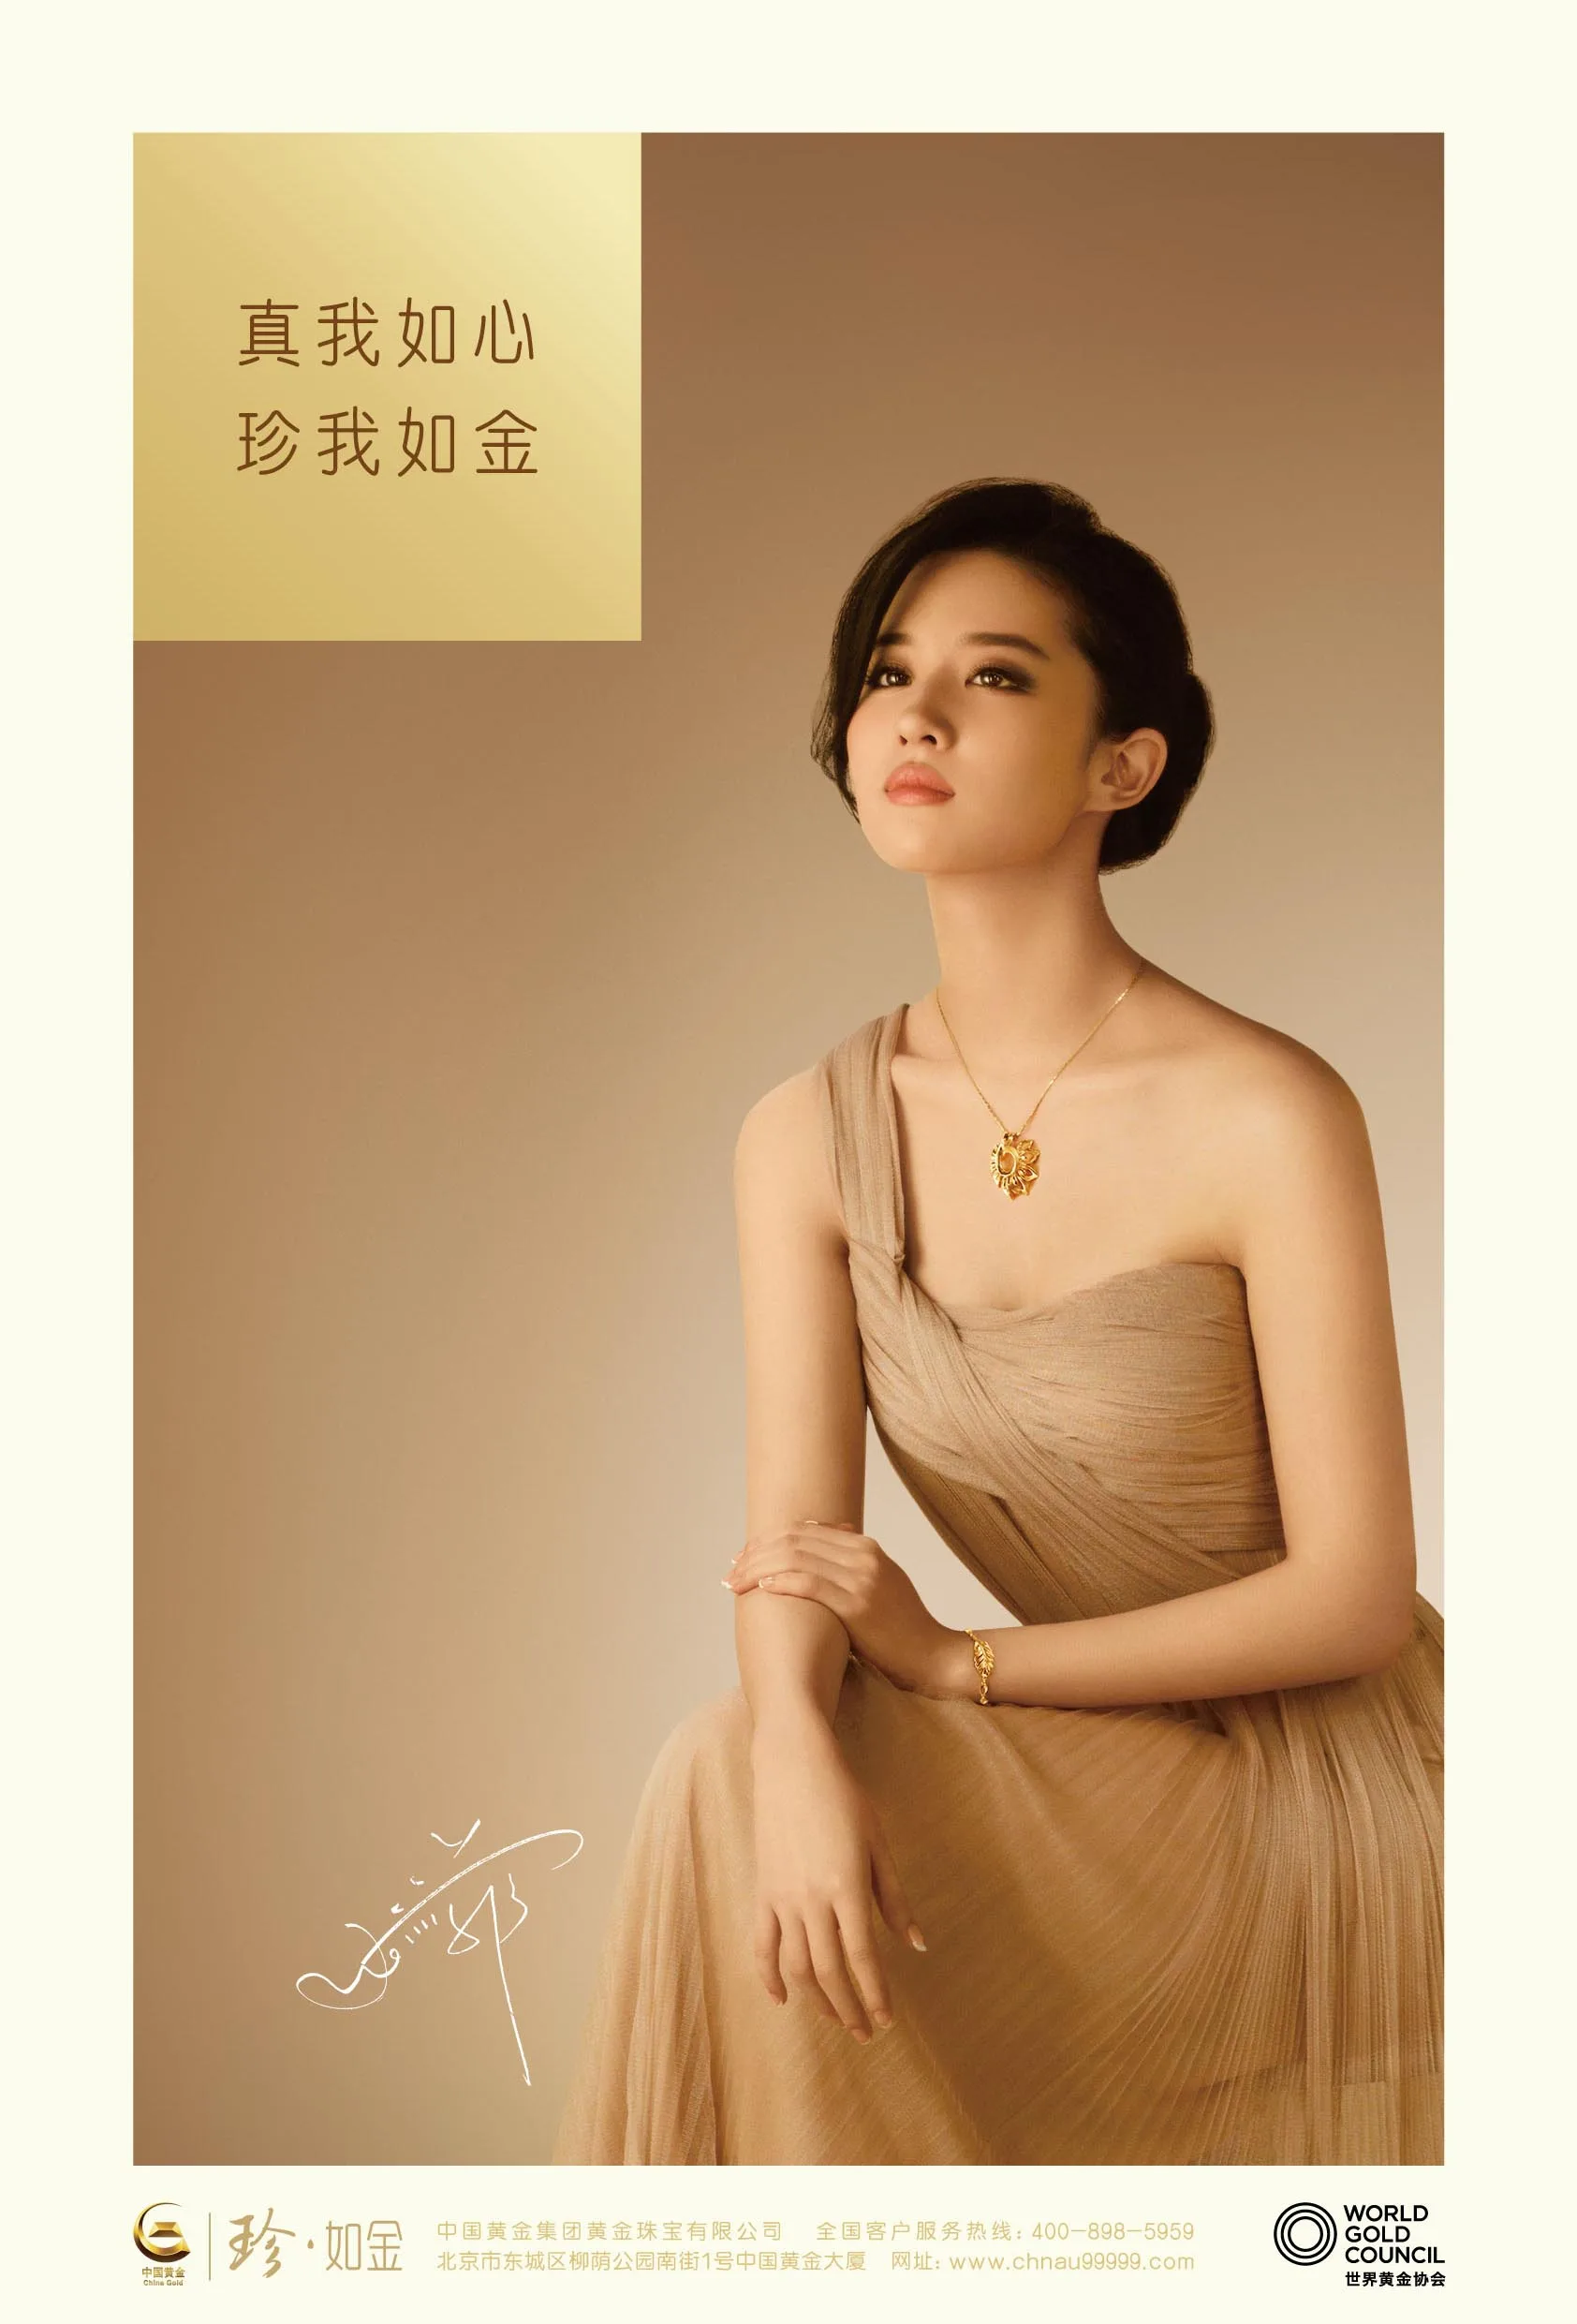 《中国黄金》广告形象照  《刘亦菲》[2014.01.12]